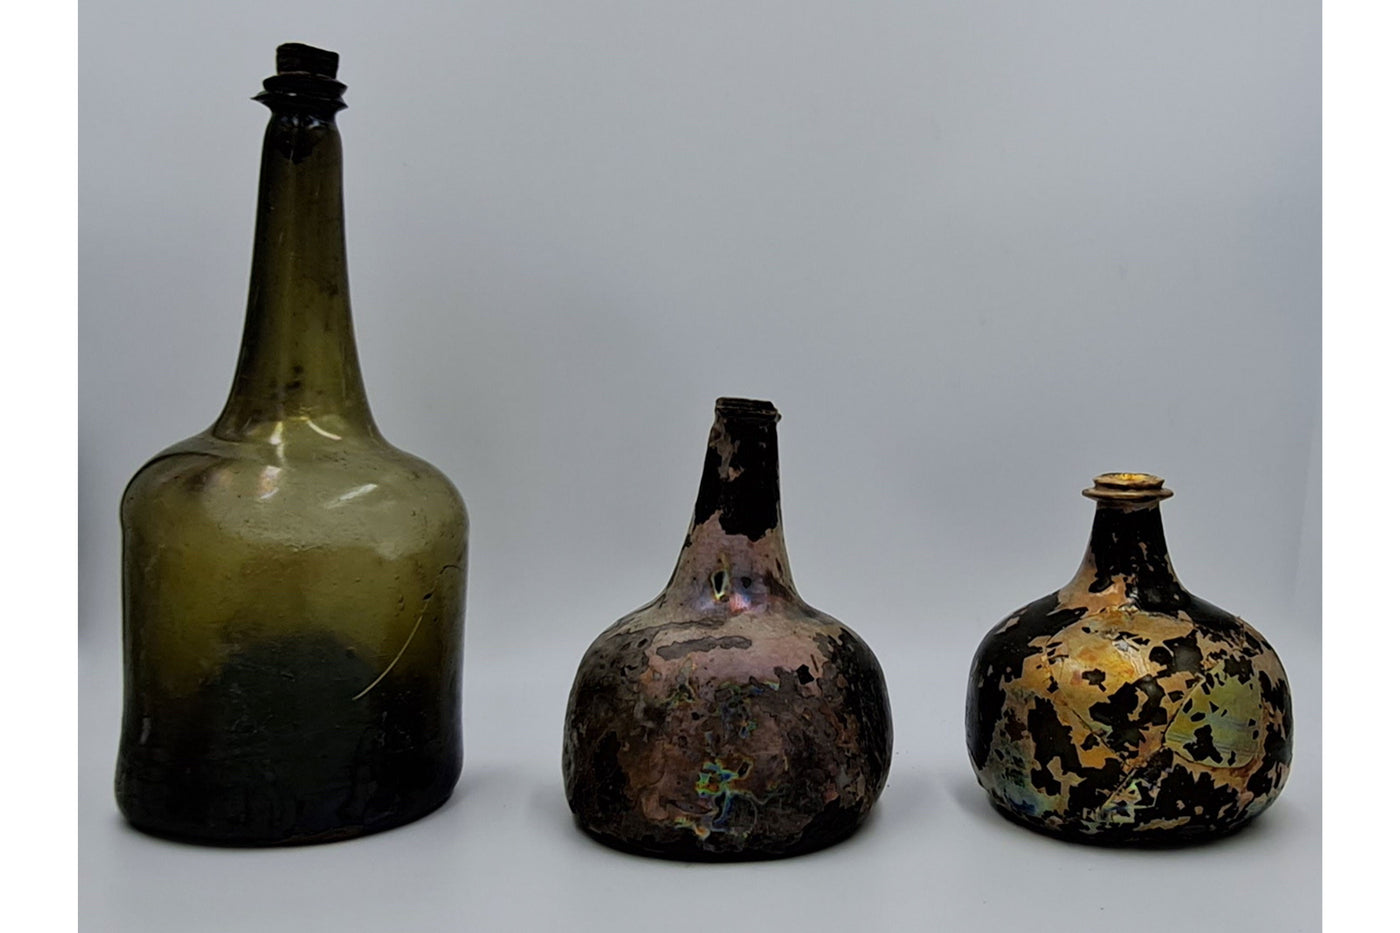 Drei alte Flaschen, die Nicola White am Ufer der Themse gefunden hat